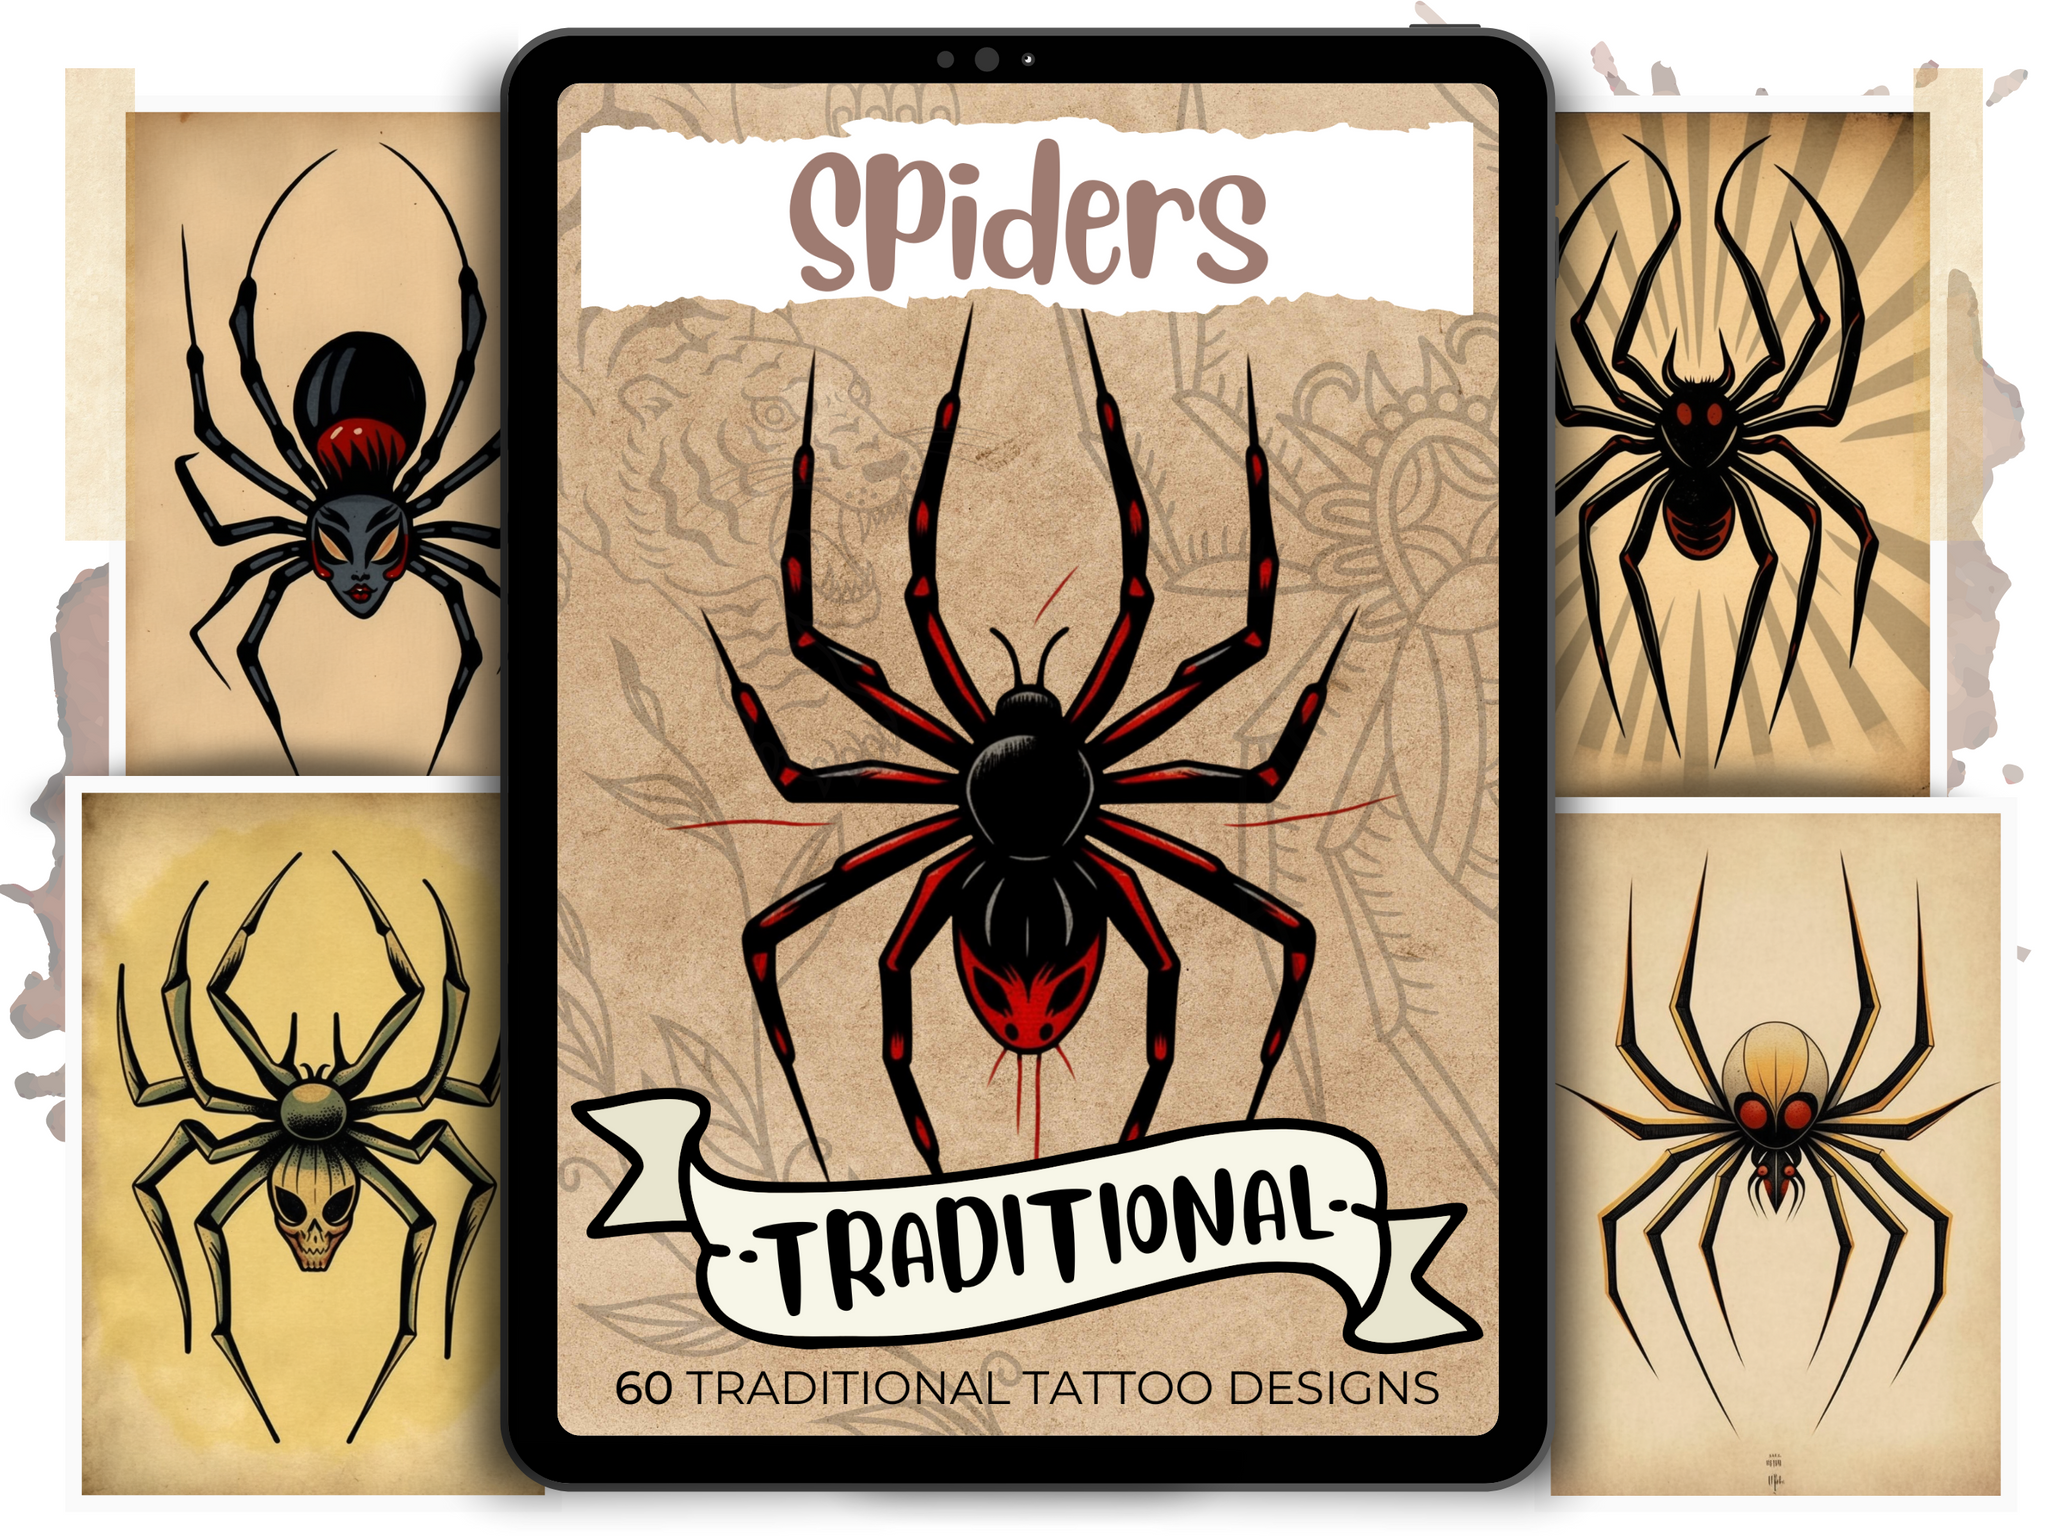 black widow spider tattoo designs